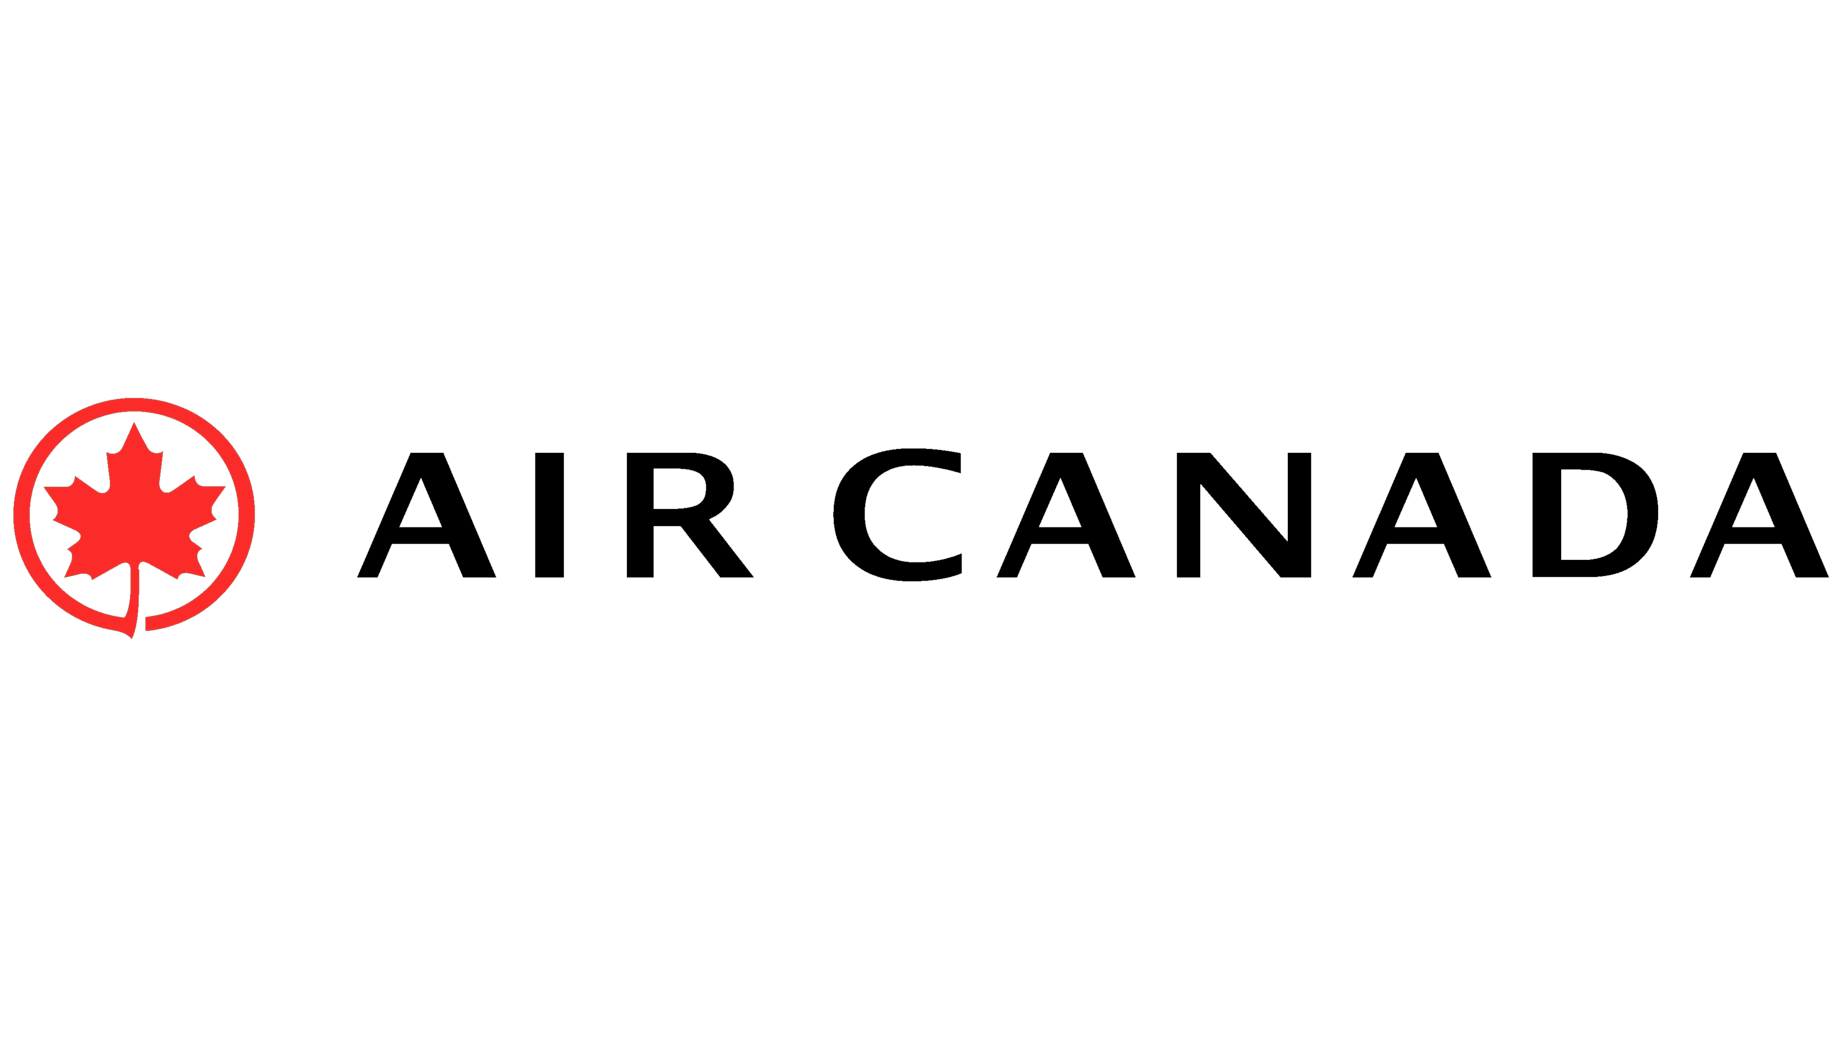 Air canada sign